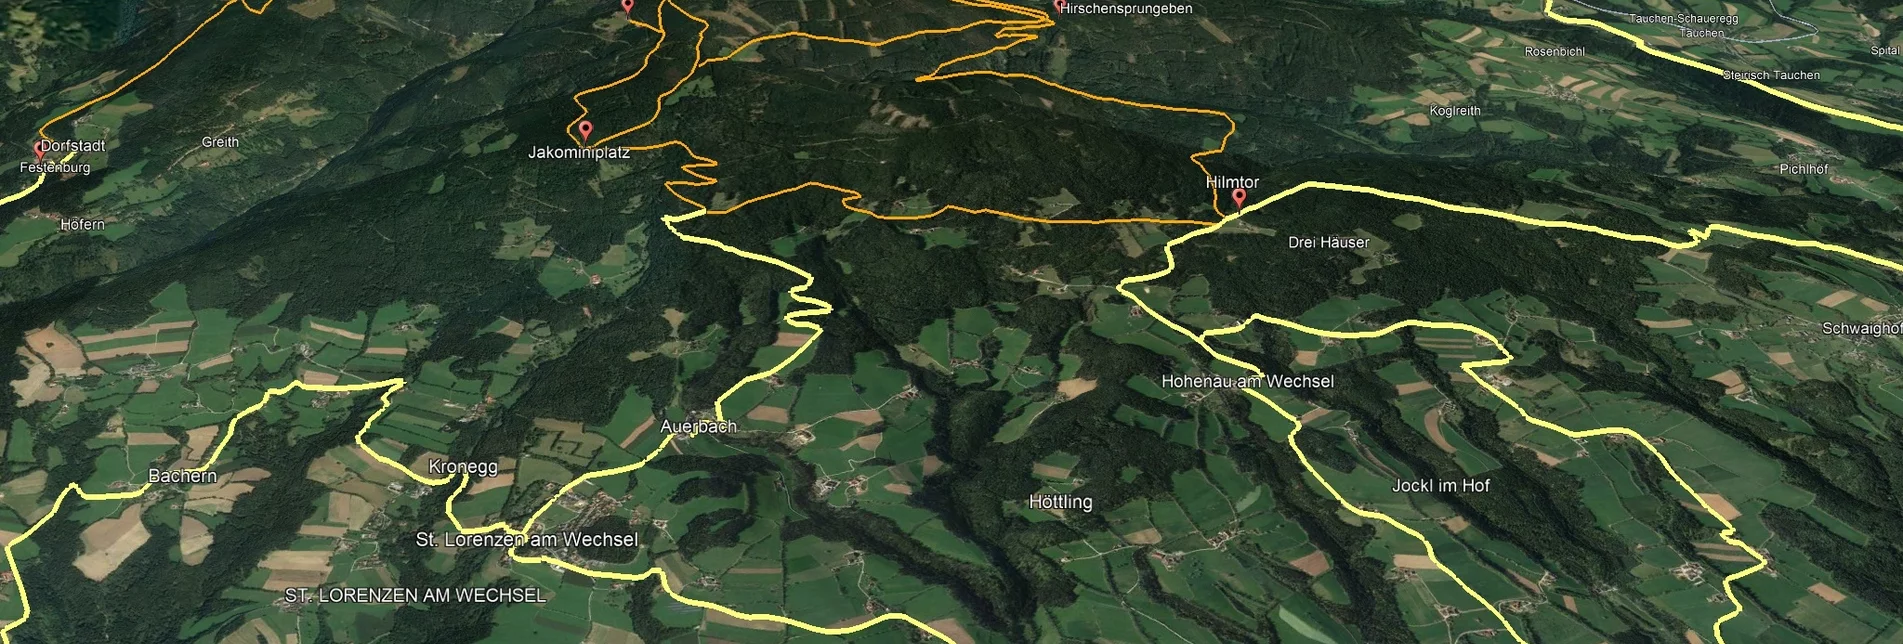 Mountain Biking PREVIEW Styrian Wexl Trails - feeder road from Dechantskirchen to Hilmtor - Touren-Impression #1 | © Verein Tourismusentwicklung Steirischer Wechsel